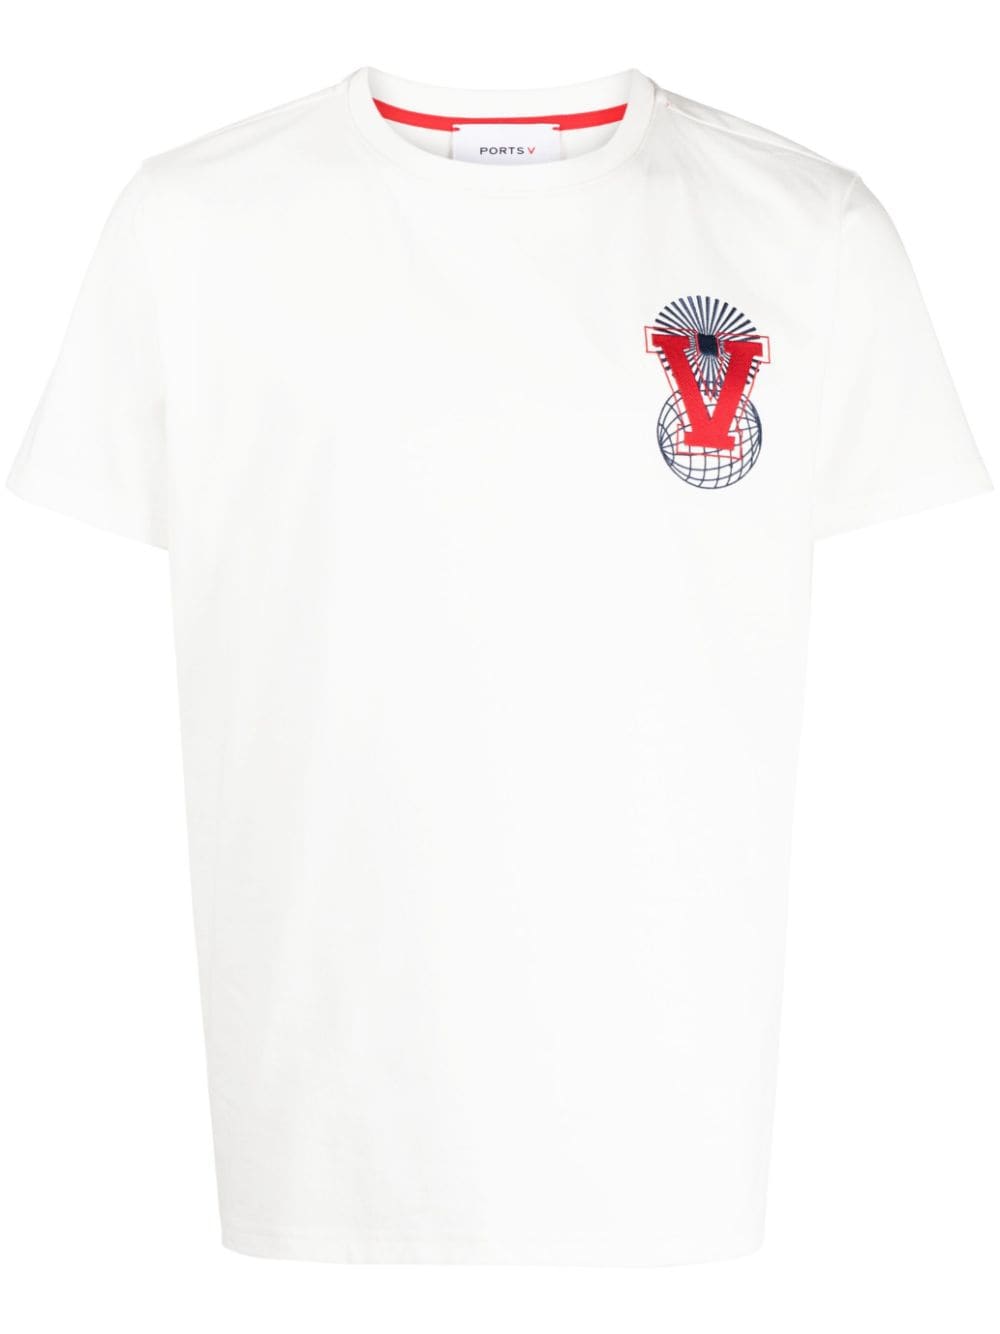 Ports V logo-embroidered T-shirt - White